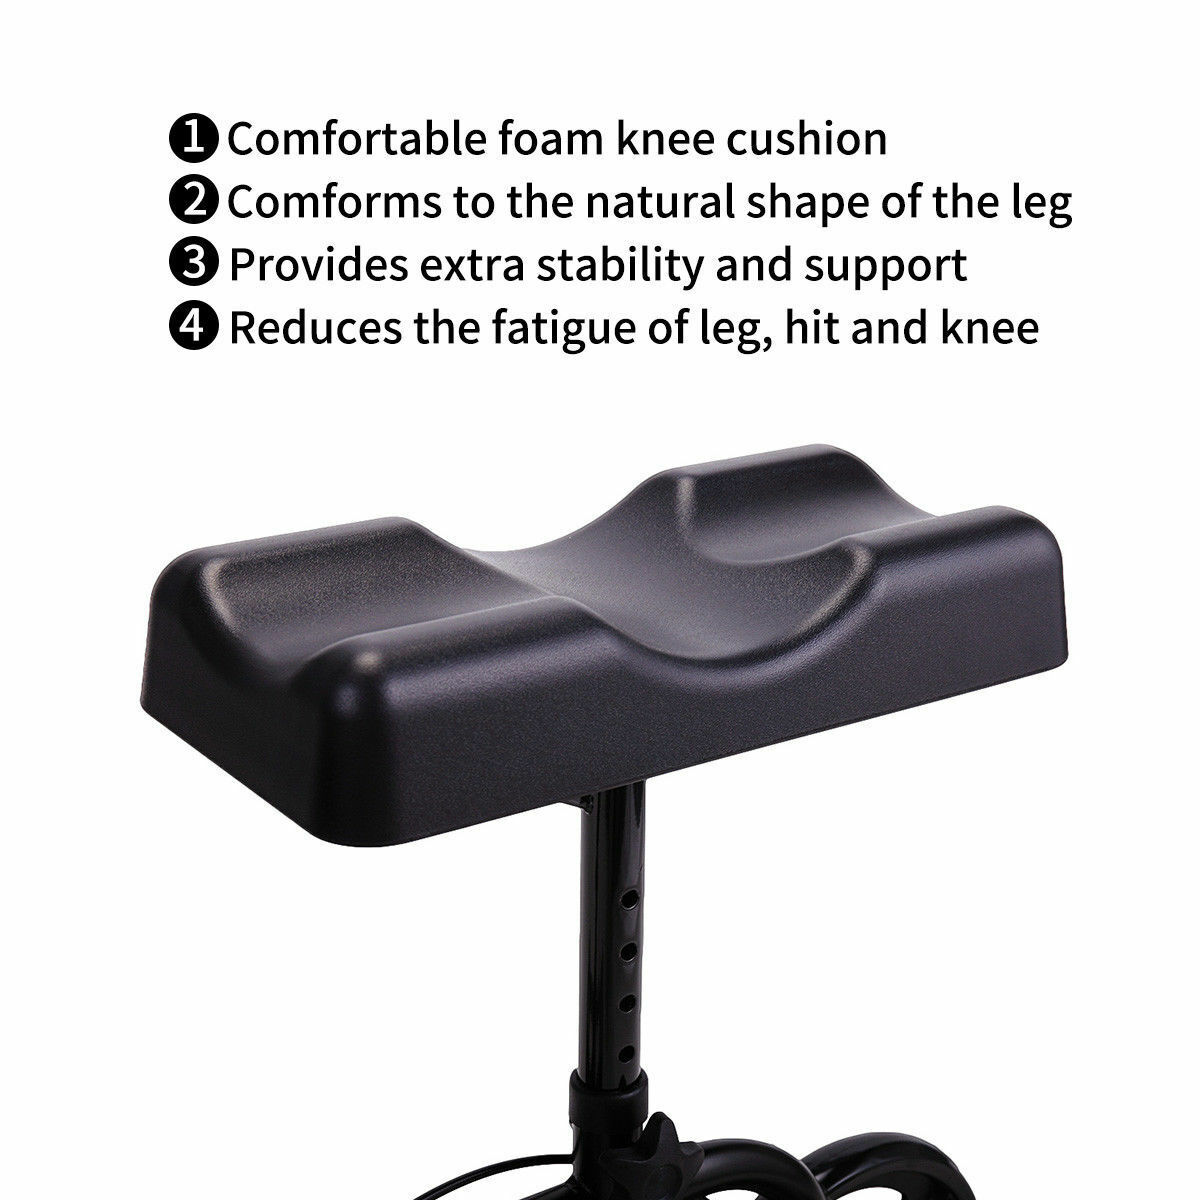 Mobility-Knee-Walker-Scooter-Roller-Crutch-Leg-Steerable-Foldable-Design-Adjustable-Height-Adjustabl-1940054-3